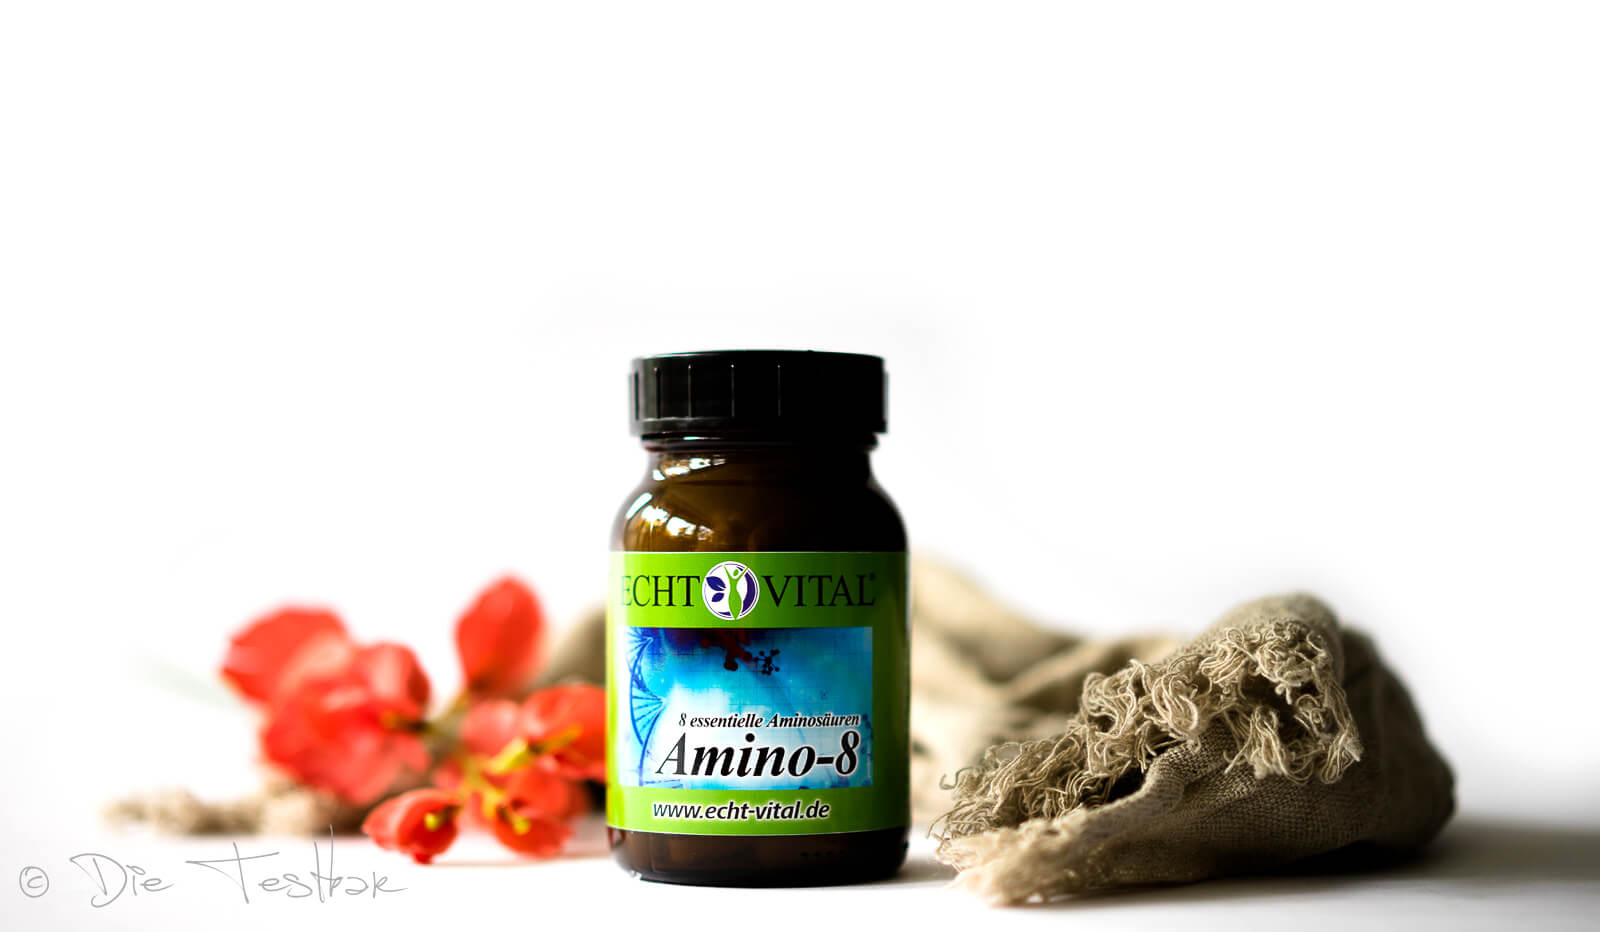 ECHT VITAL Amino-8 - alle essentiellen Aminosäuren (EAA) in einer Tablette